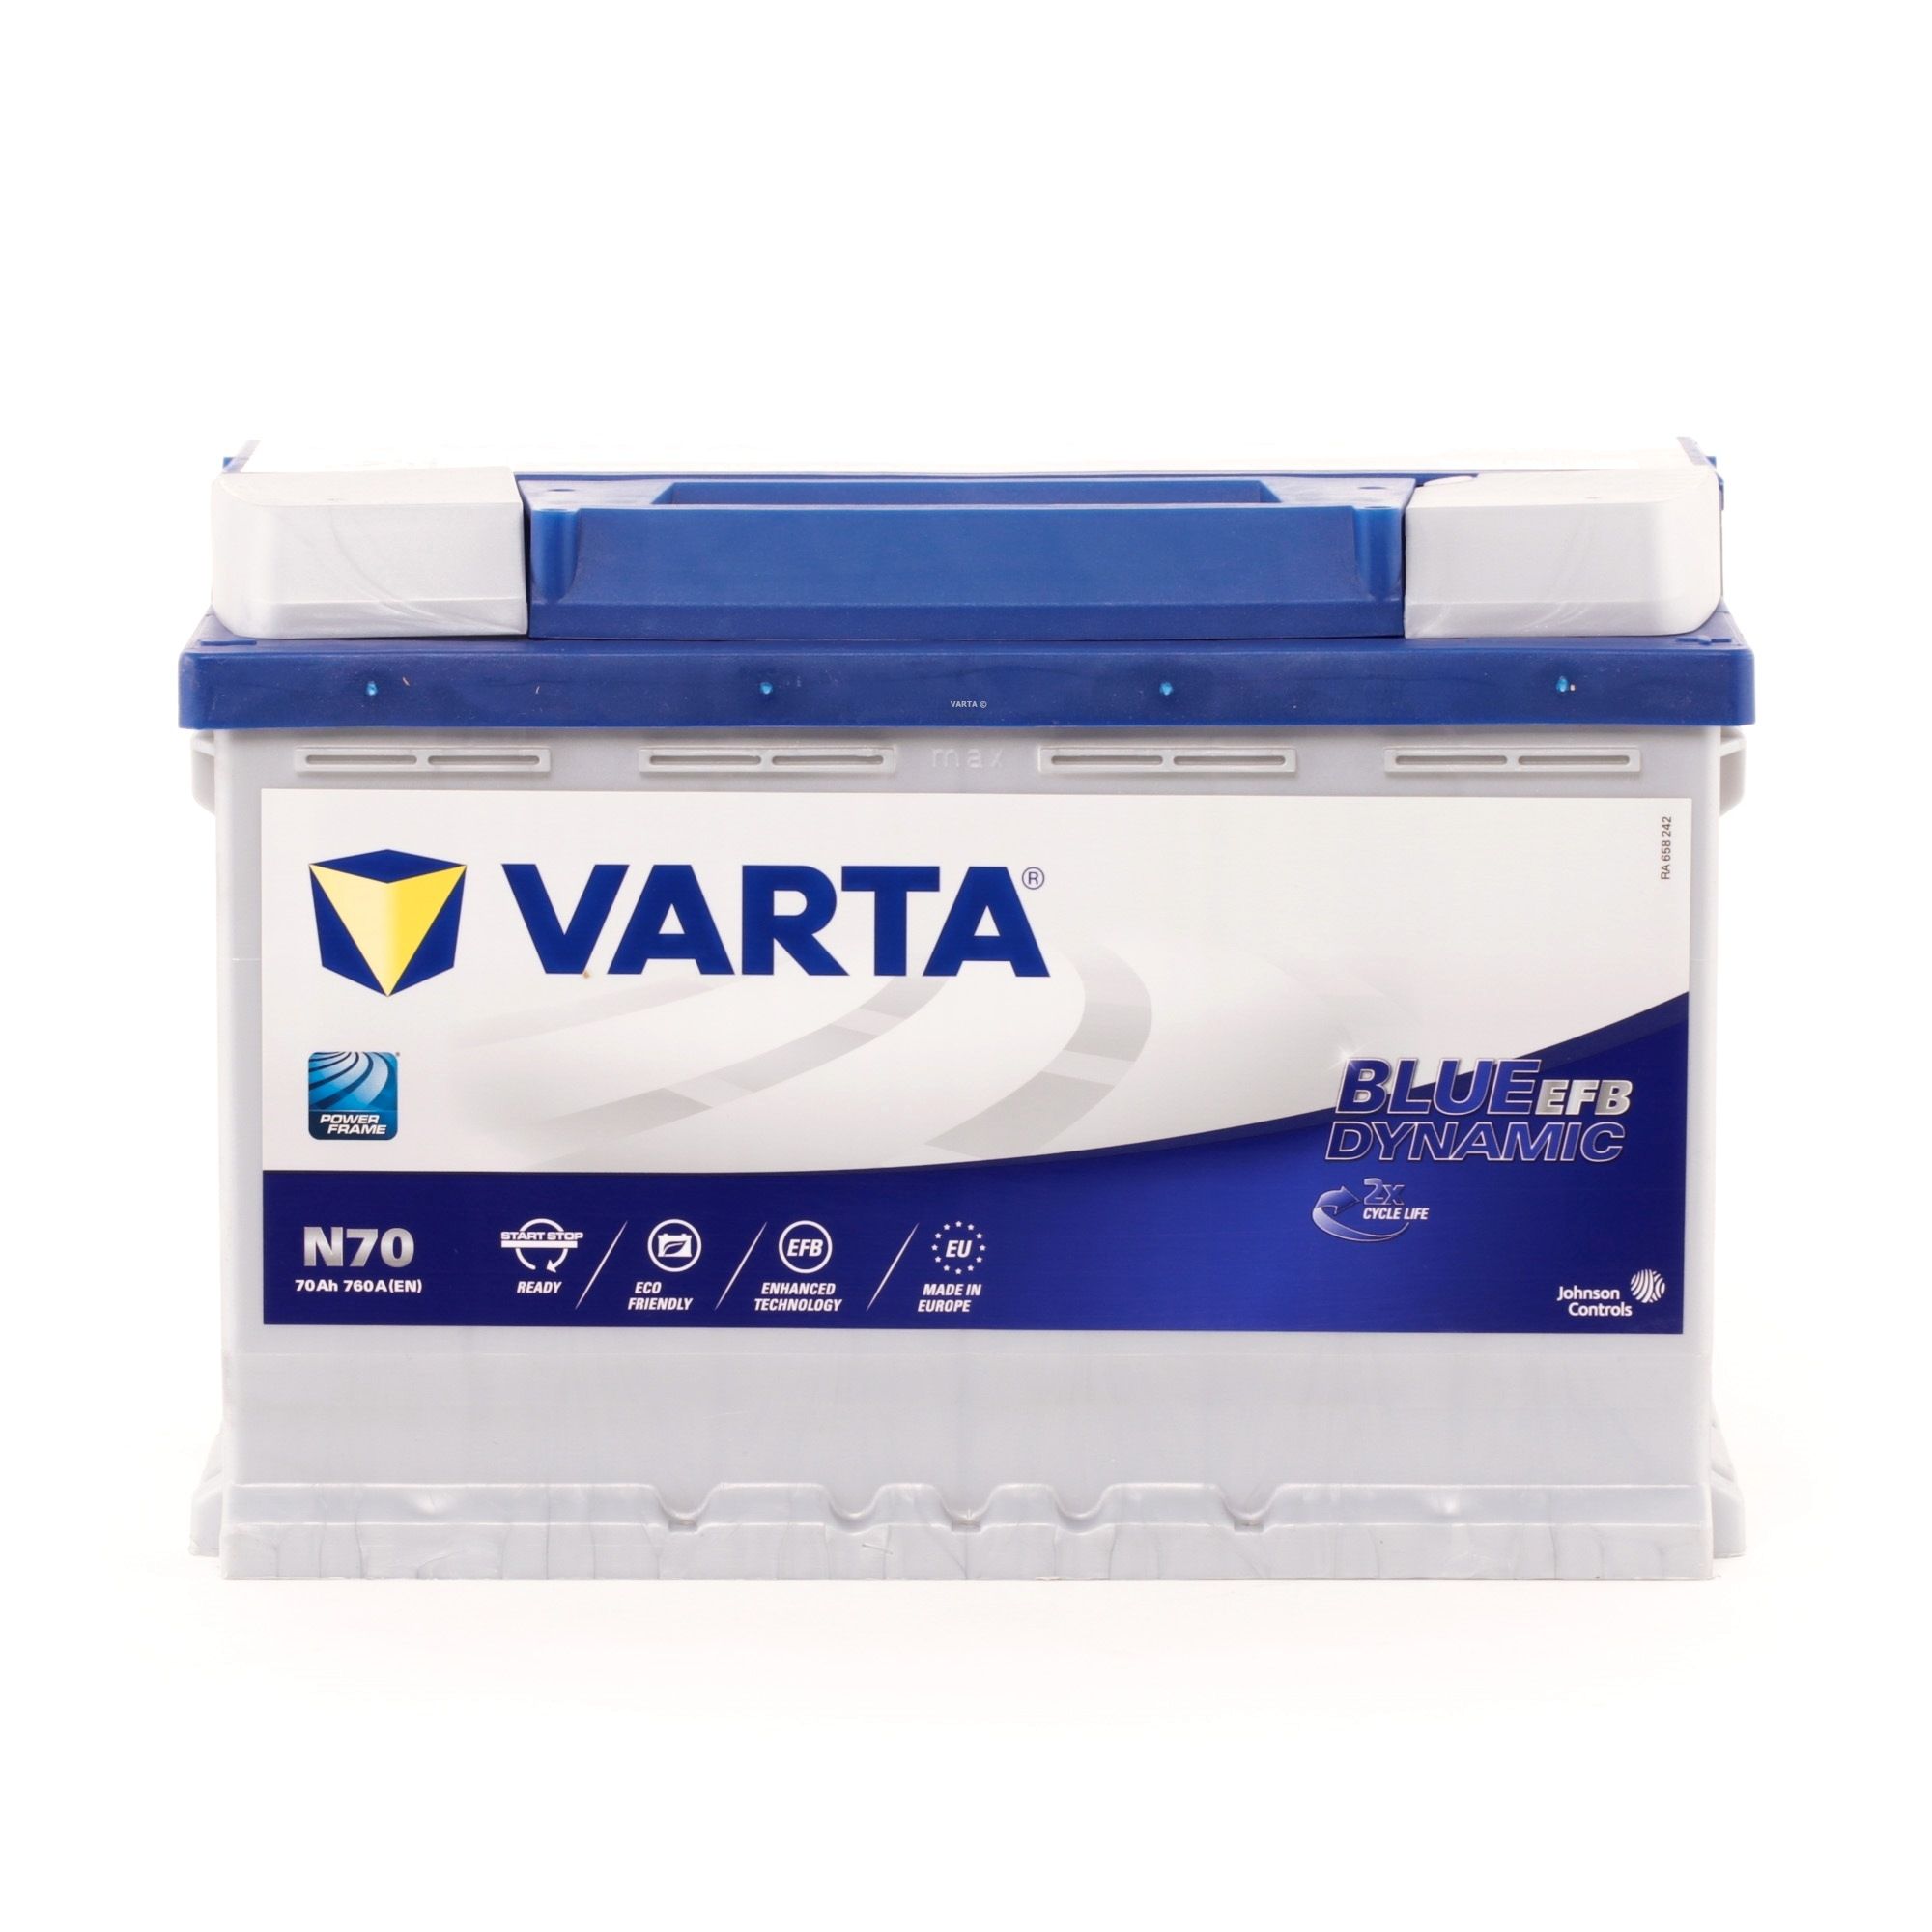 Indító akkumulátor VARTA BLUE dynamic 570500076D842